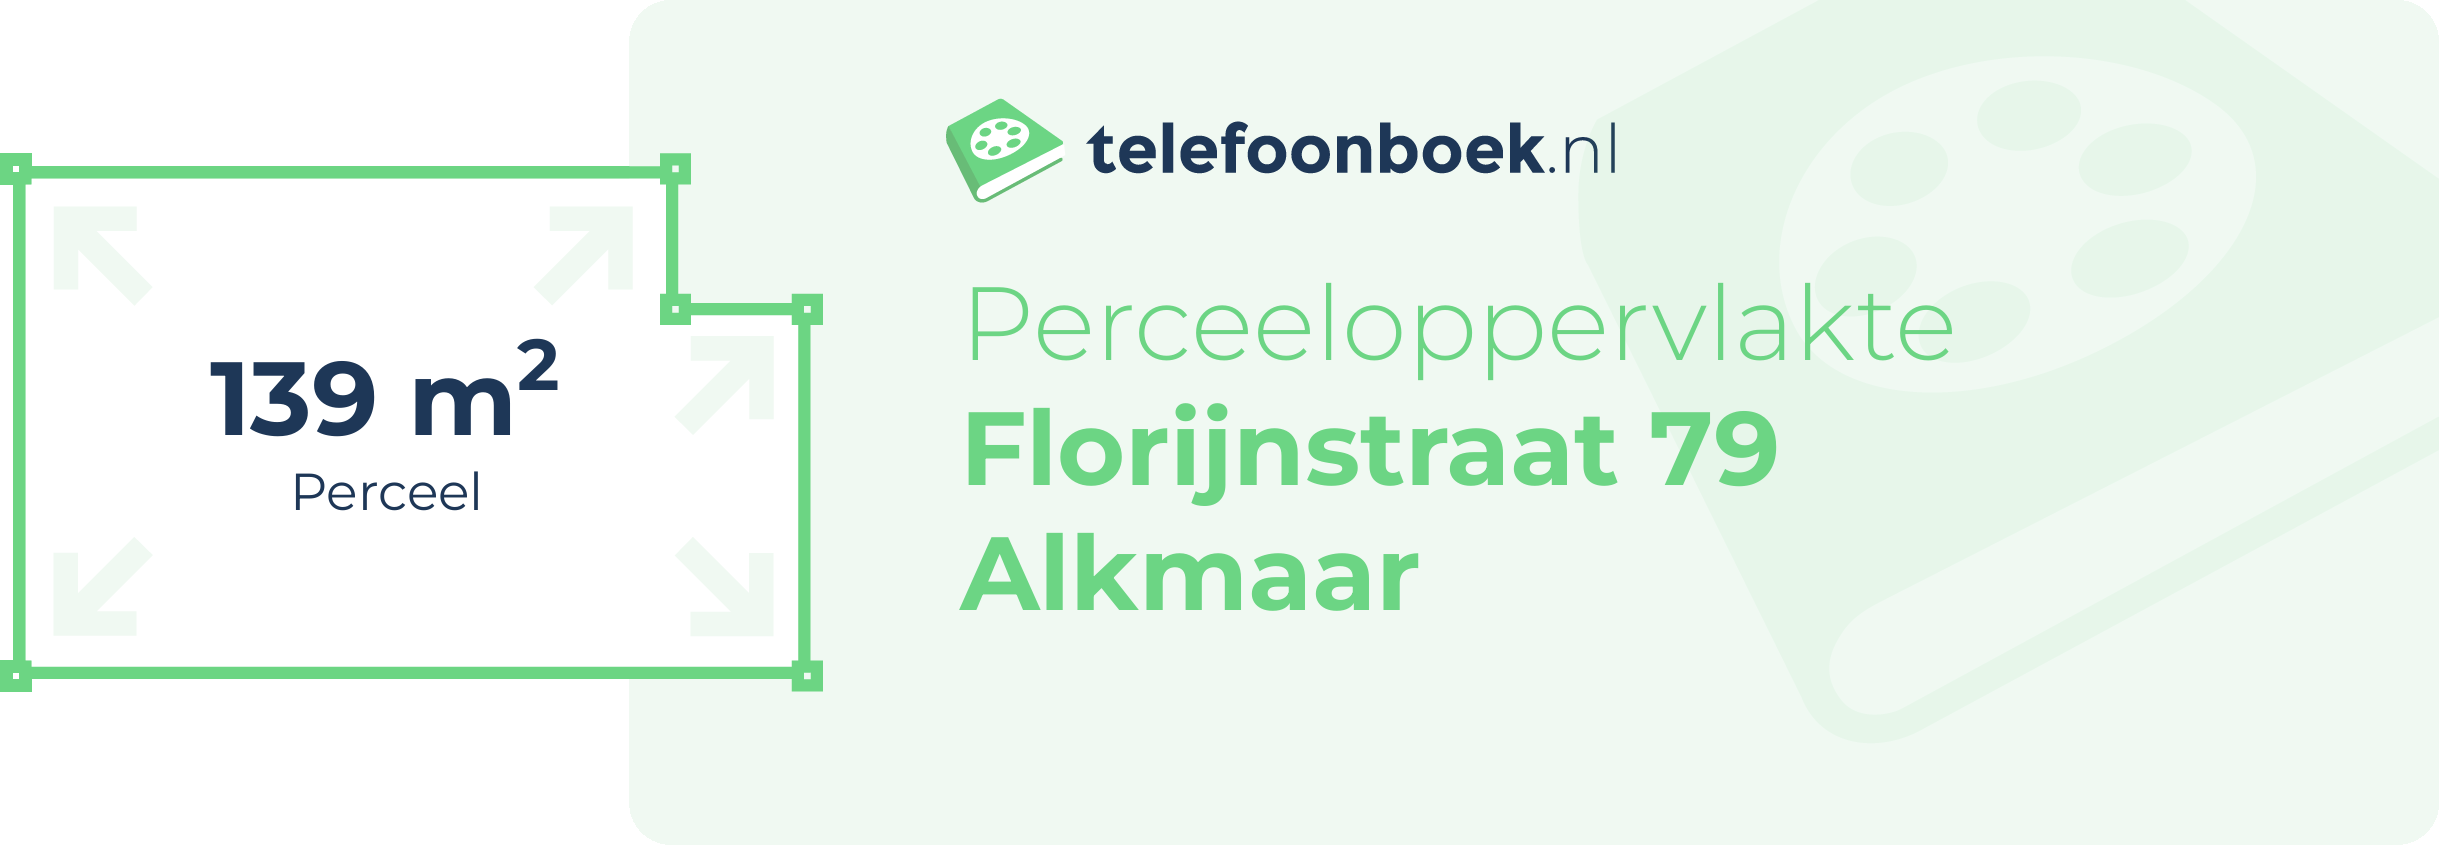 Perceeloppervlakte Florijnstraat 79 Alkmaar